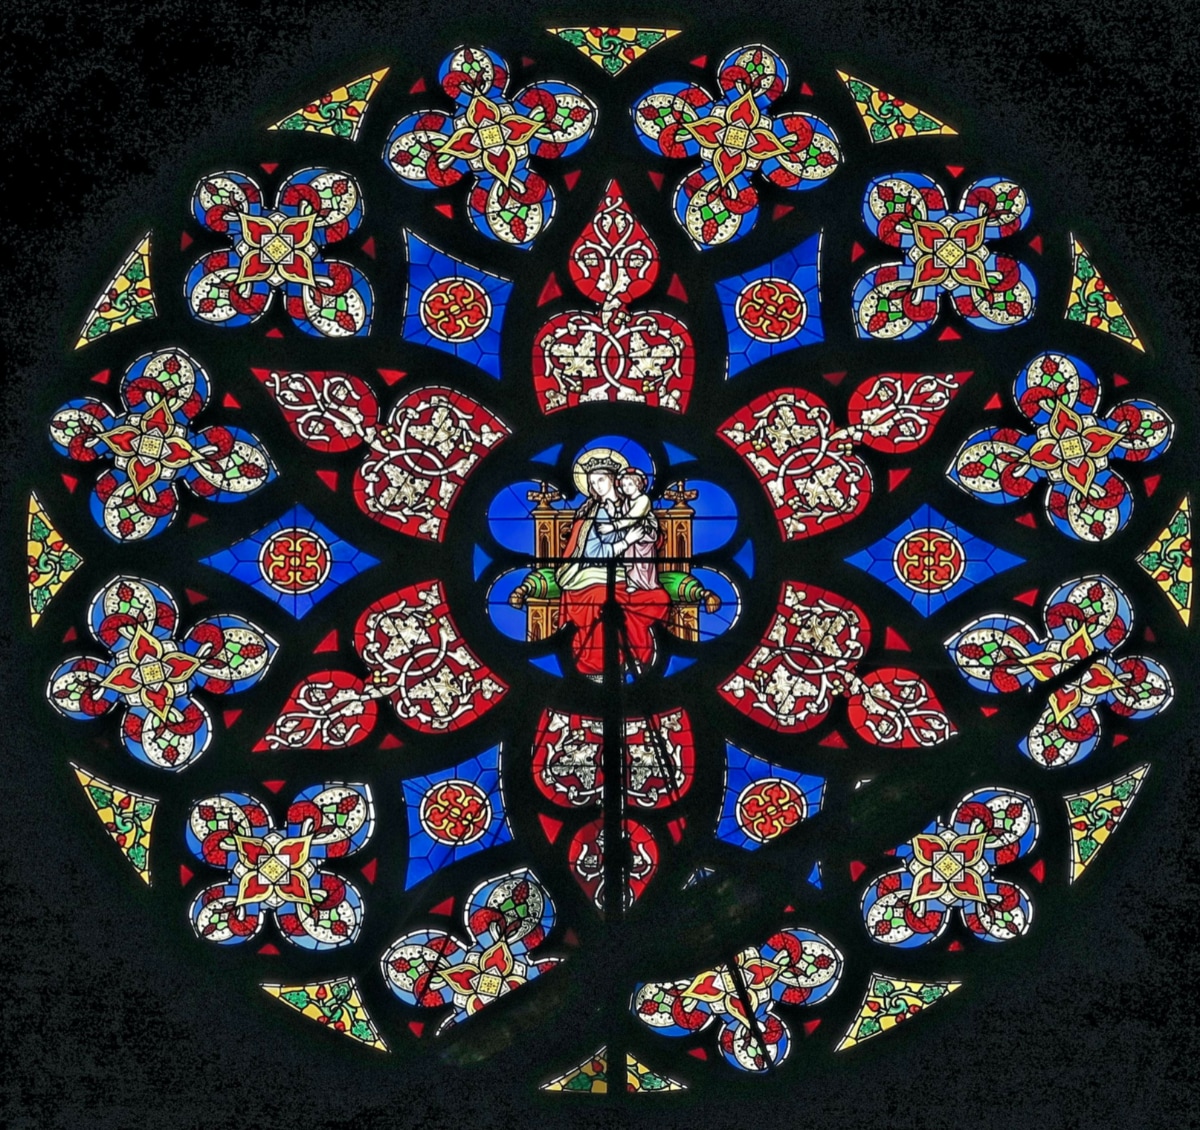 Bruxelles, rosace stained glass windows Notre-Dame du Sablon church